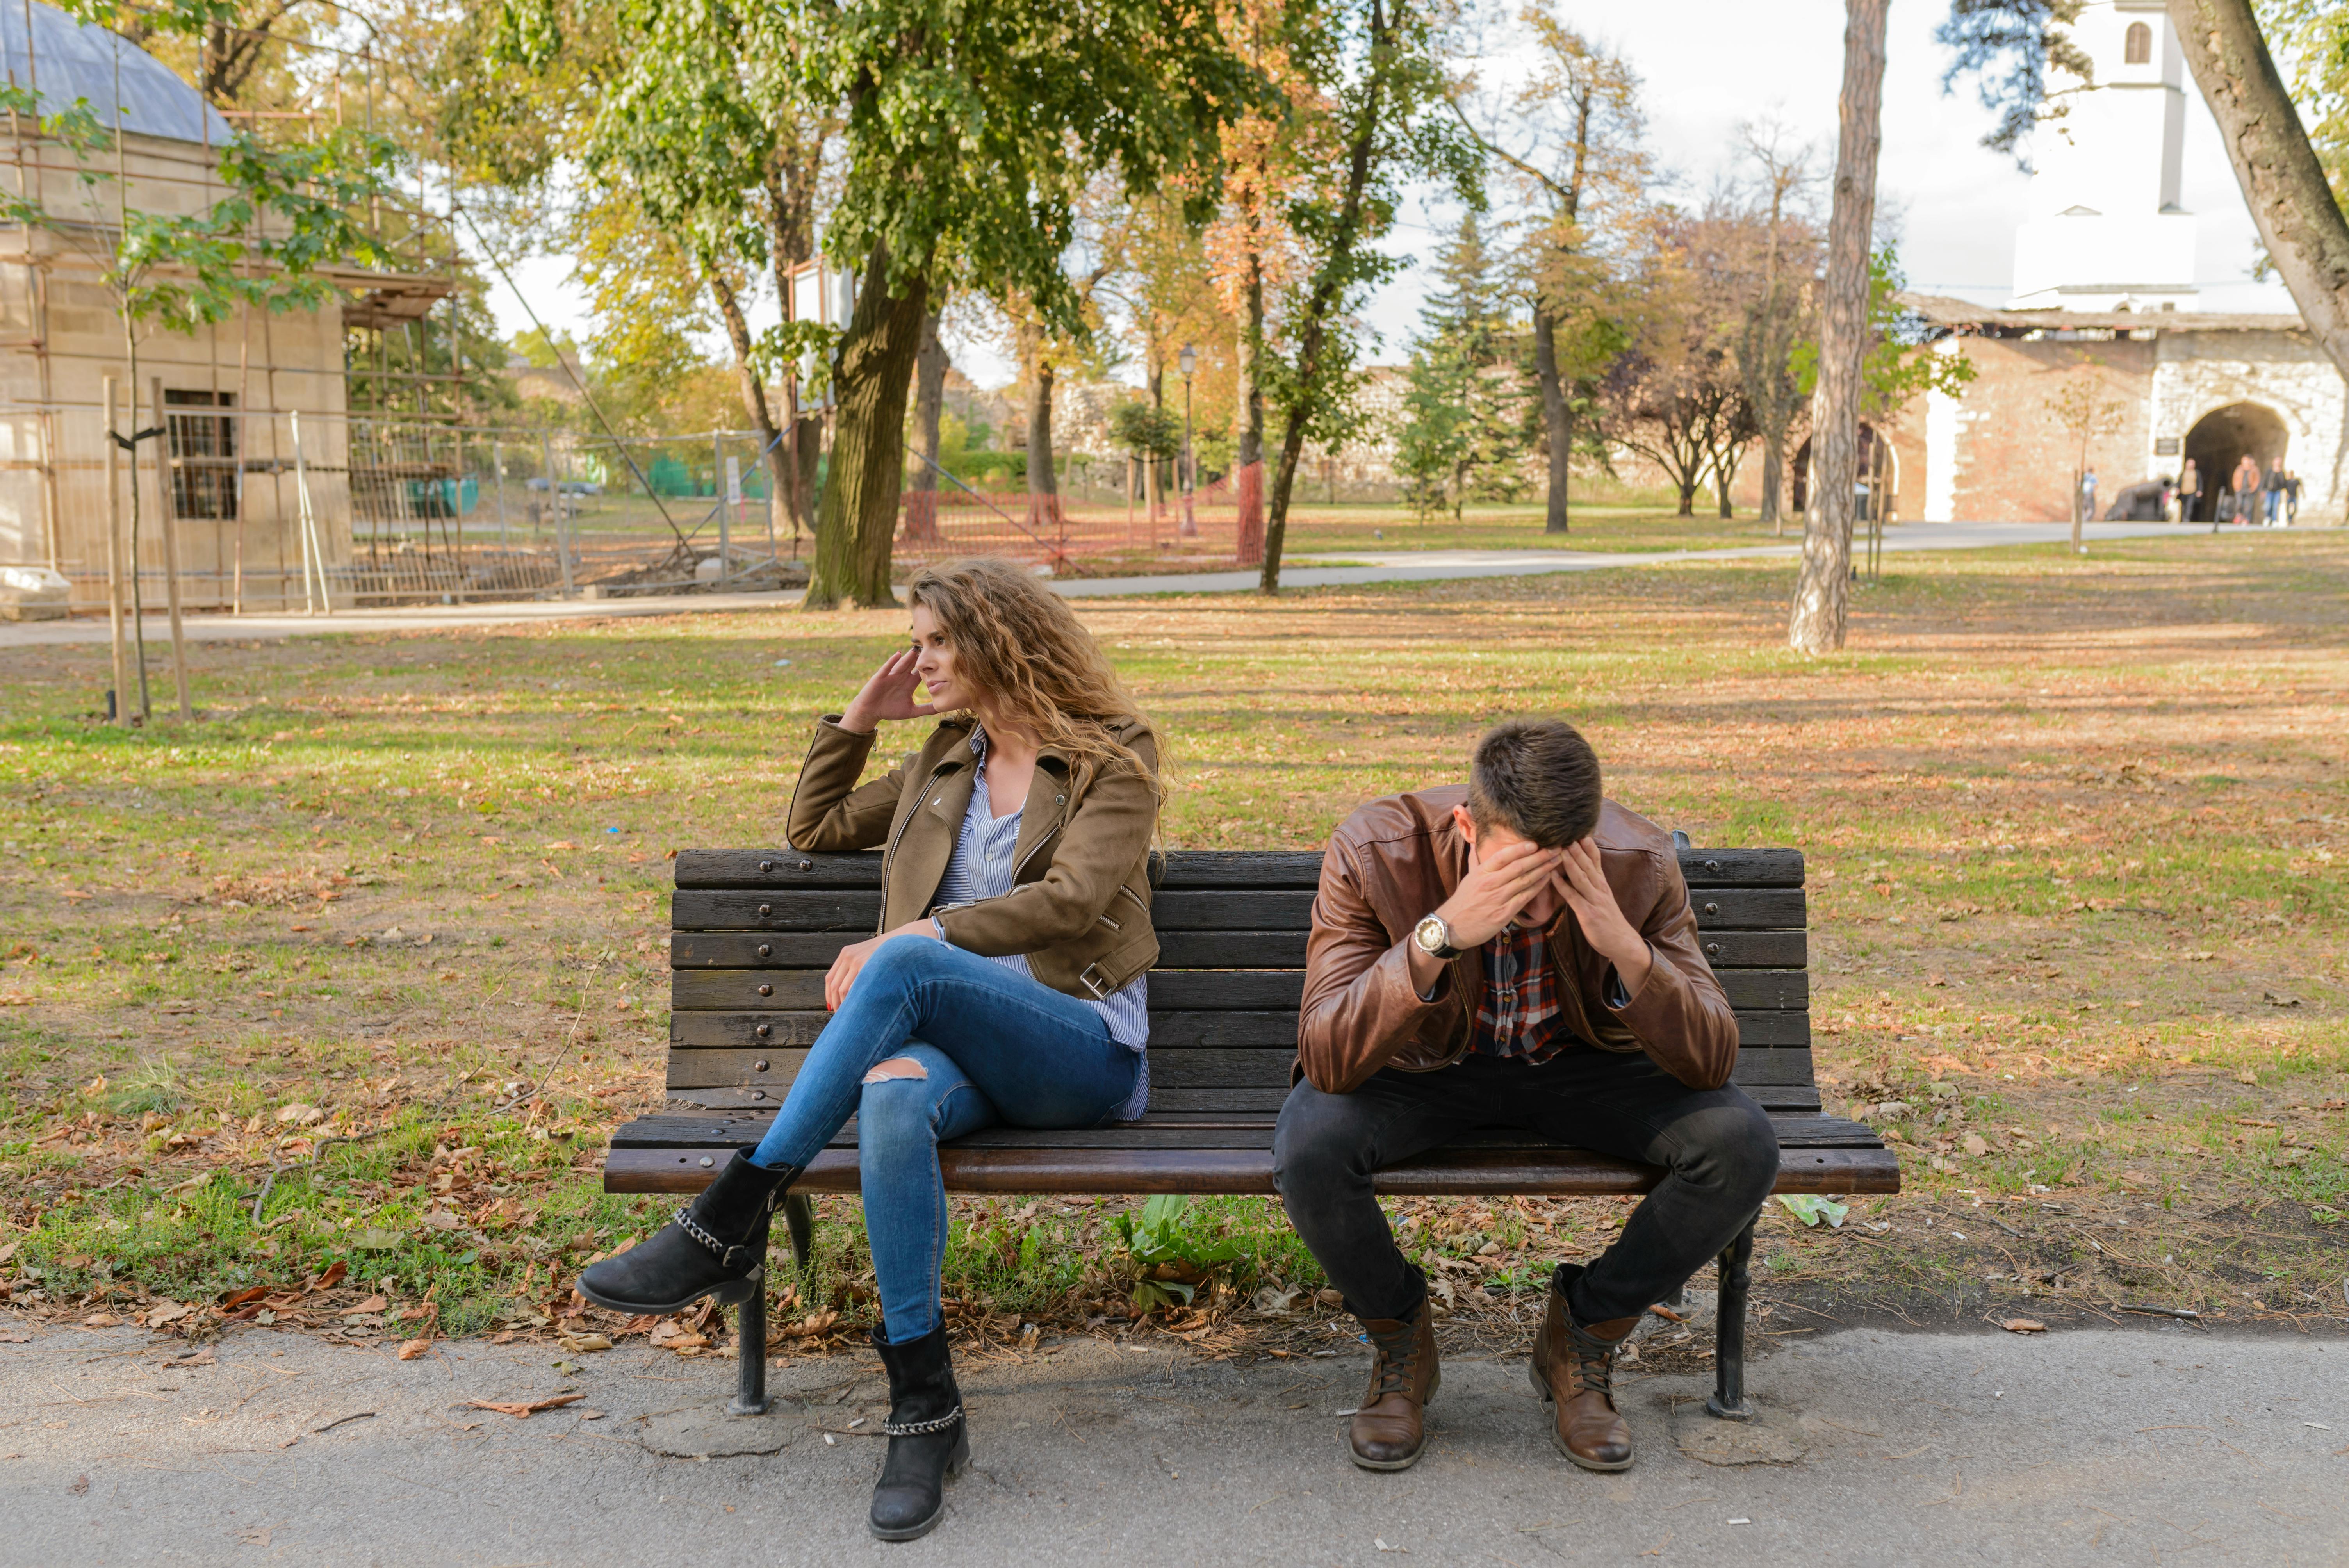 Una pareja infeliz sentada en un banco del parque | Fuente: Pexels